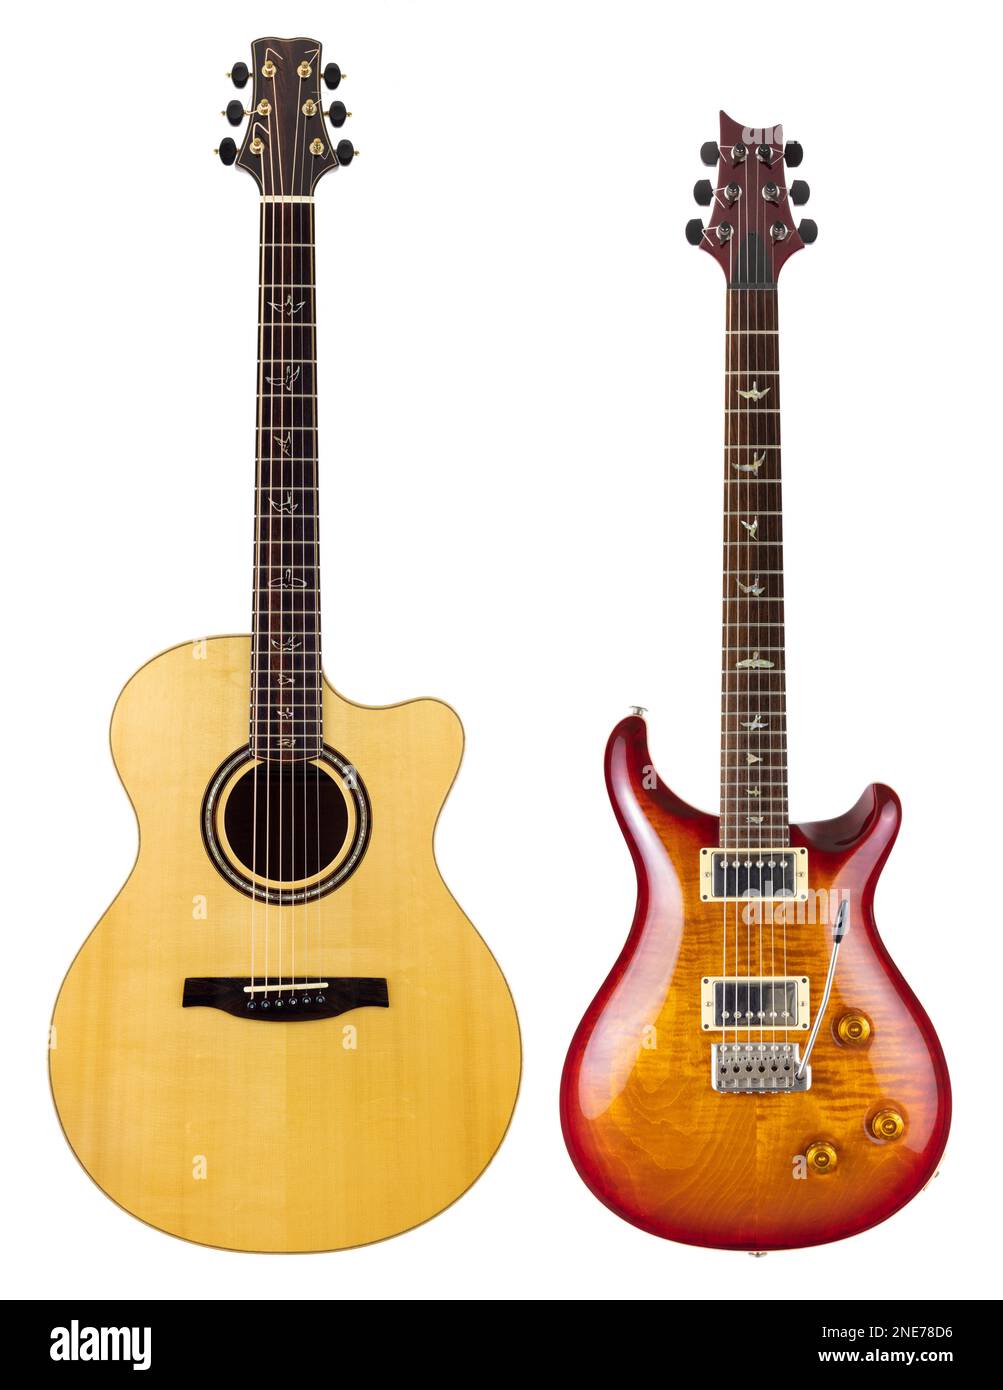 Guitares deux guitares guitare électrique guitares acoustiques découpées guitares sur fond blanc PRS custom 22 guitare PRS Angelus guitare acoustique deux guitares Banque D'Images